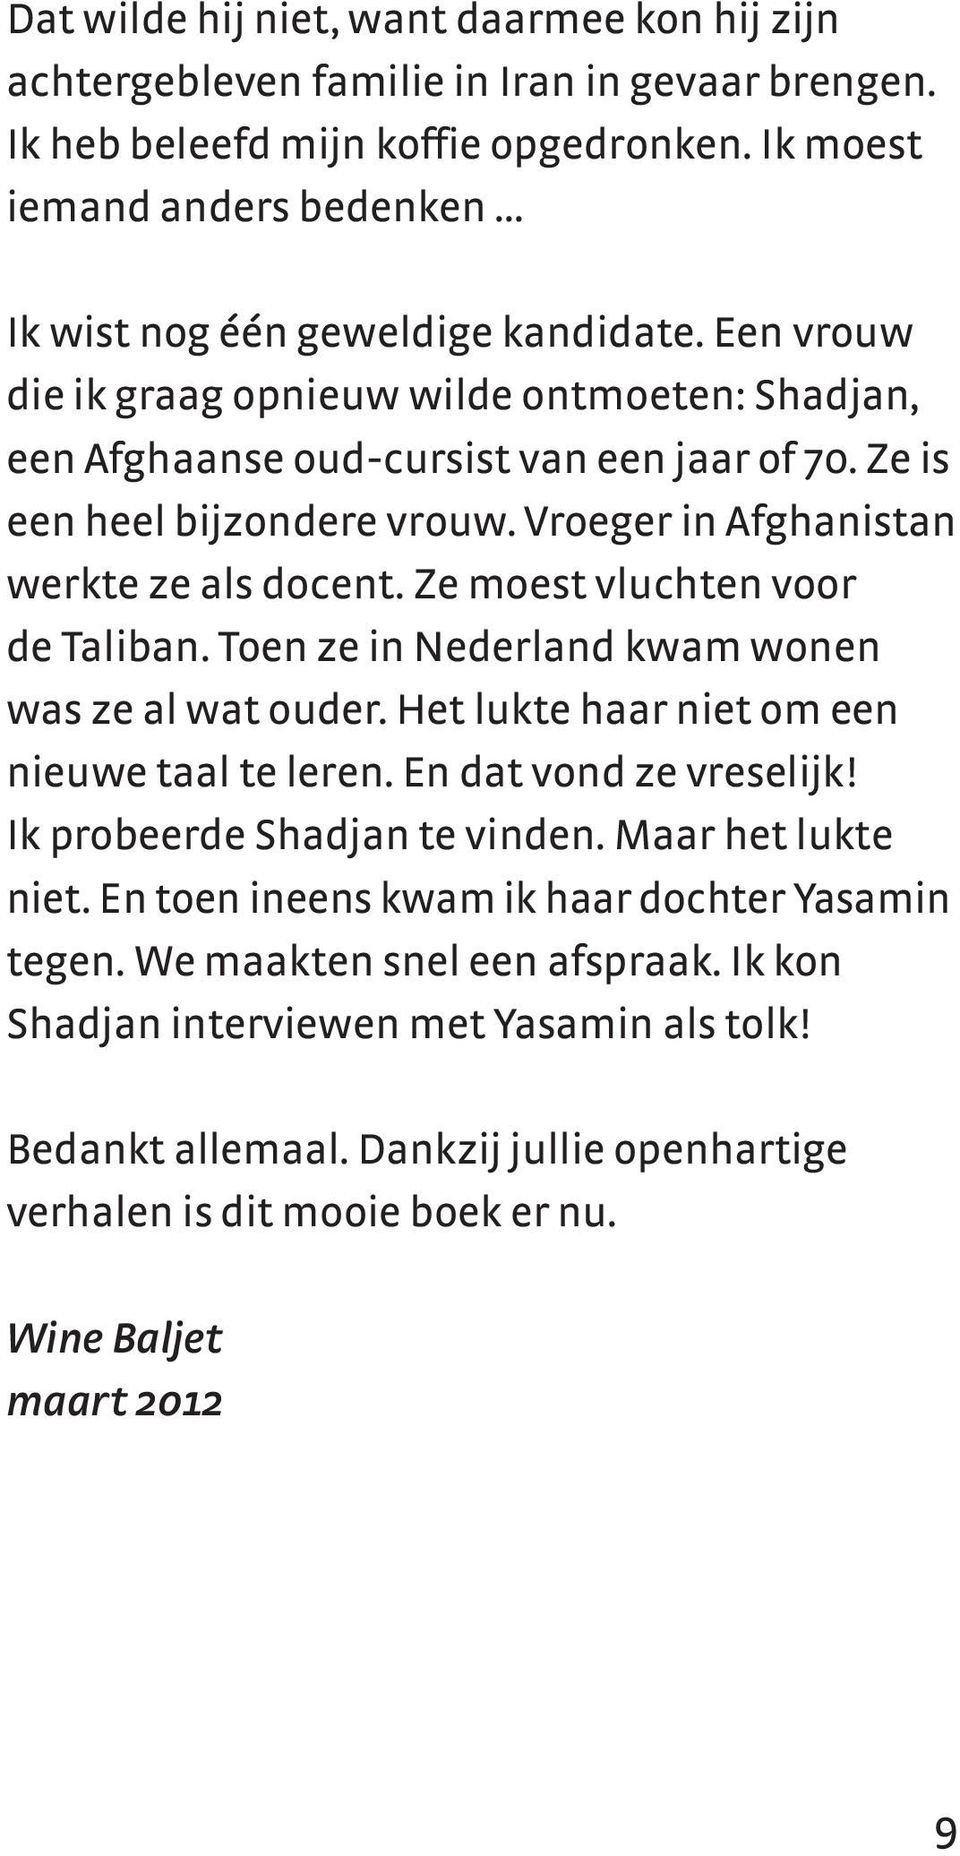 Vroeger in Afghanistan werkte ze als docent. Ze moest vluchten voor de Taliban. Toen ze in Nederland kwam wonen was ze al wat ouder. Het lukte haar niet om een nieuwe taal te leren.